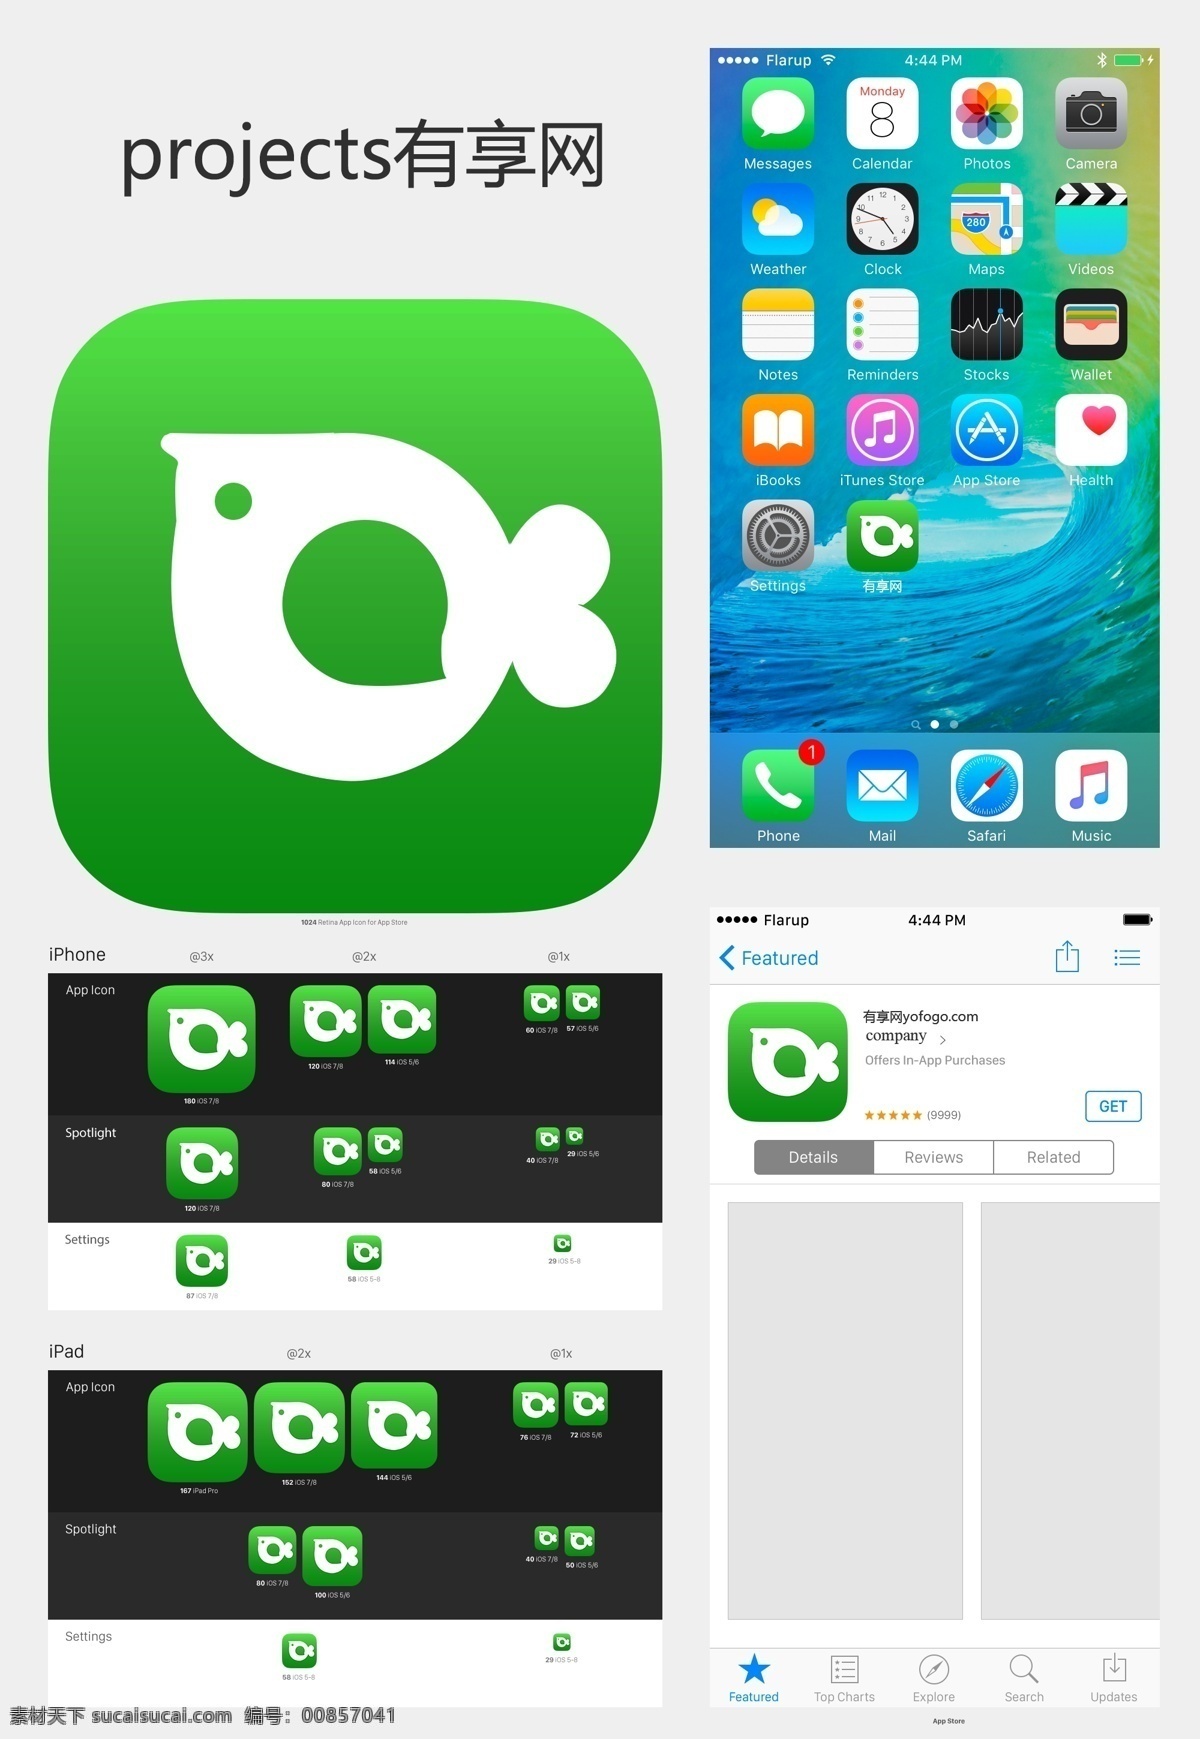 享 网 icon 方案 app图标 有享网 手机图标模板 手机 app 模板 应用 图标 手机应用图标 白色